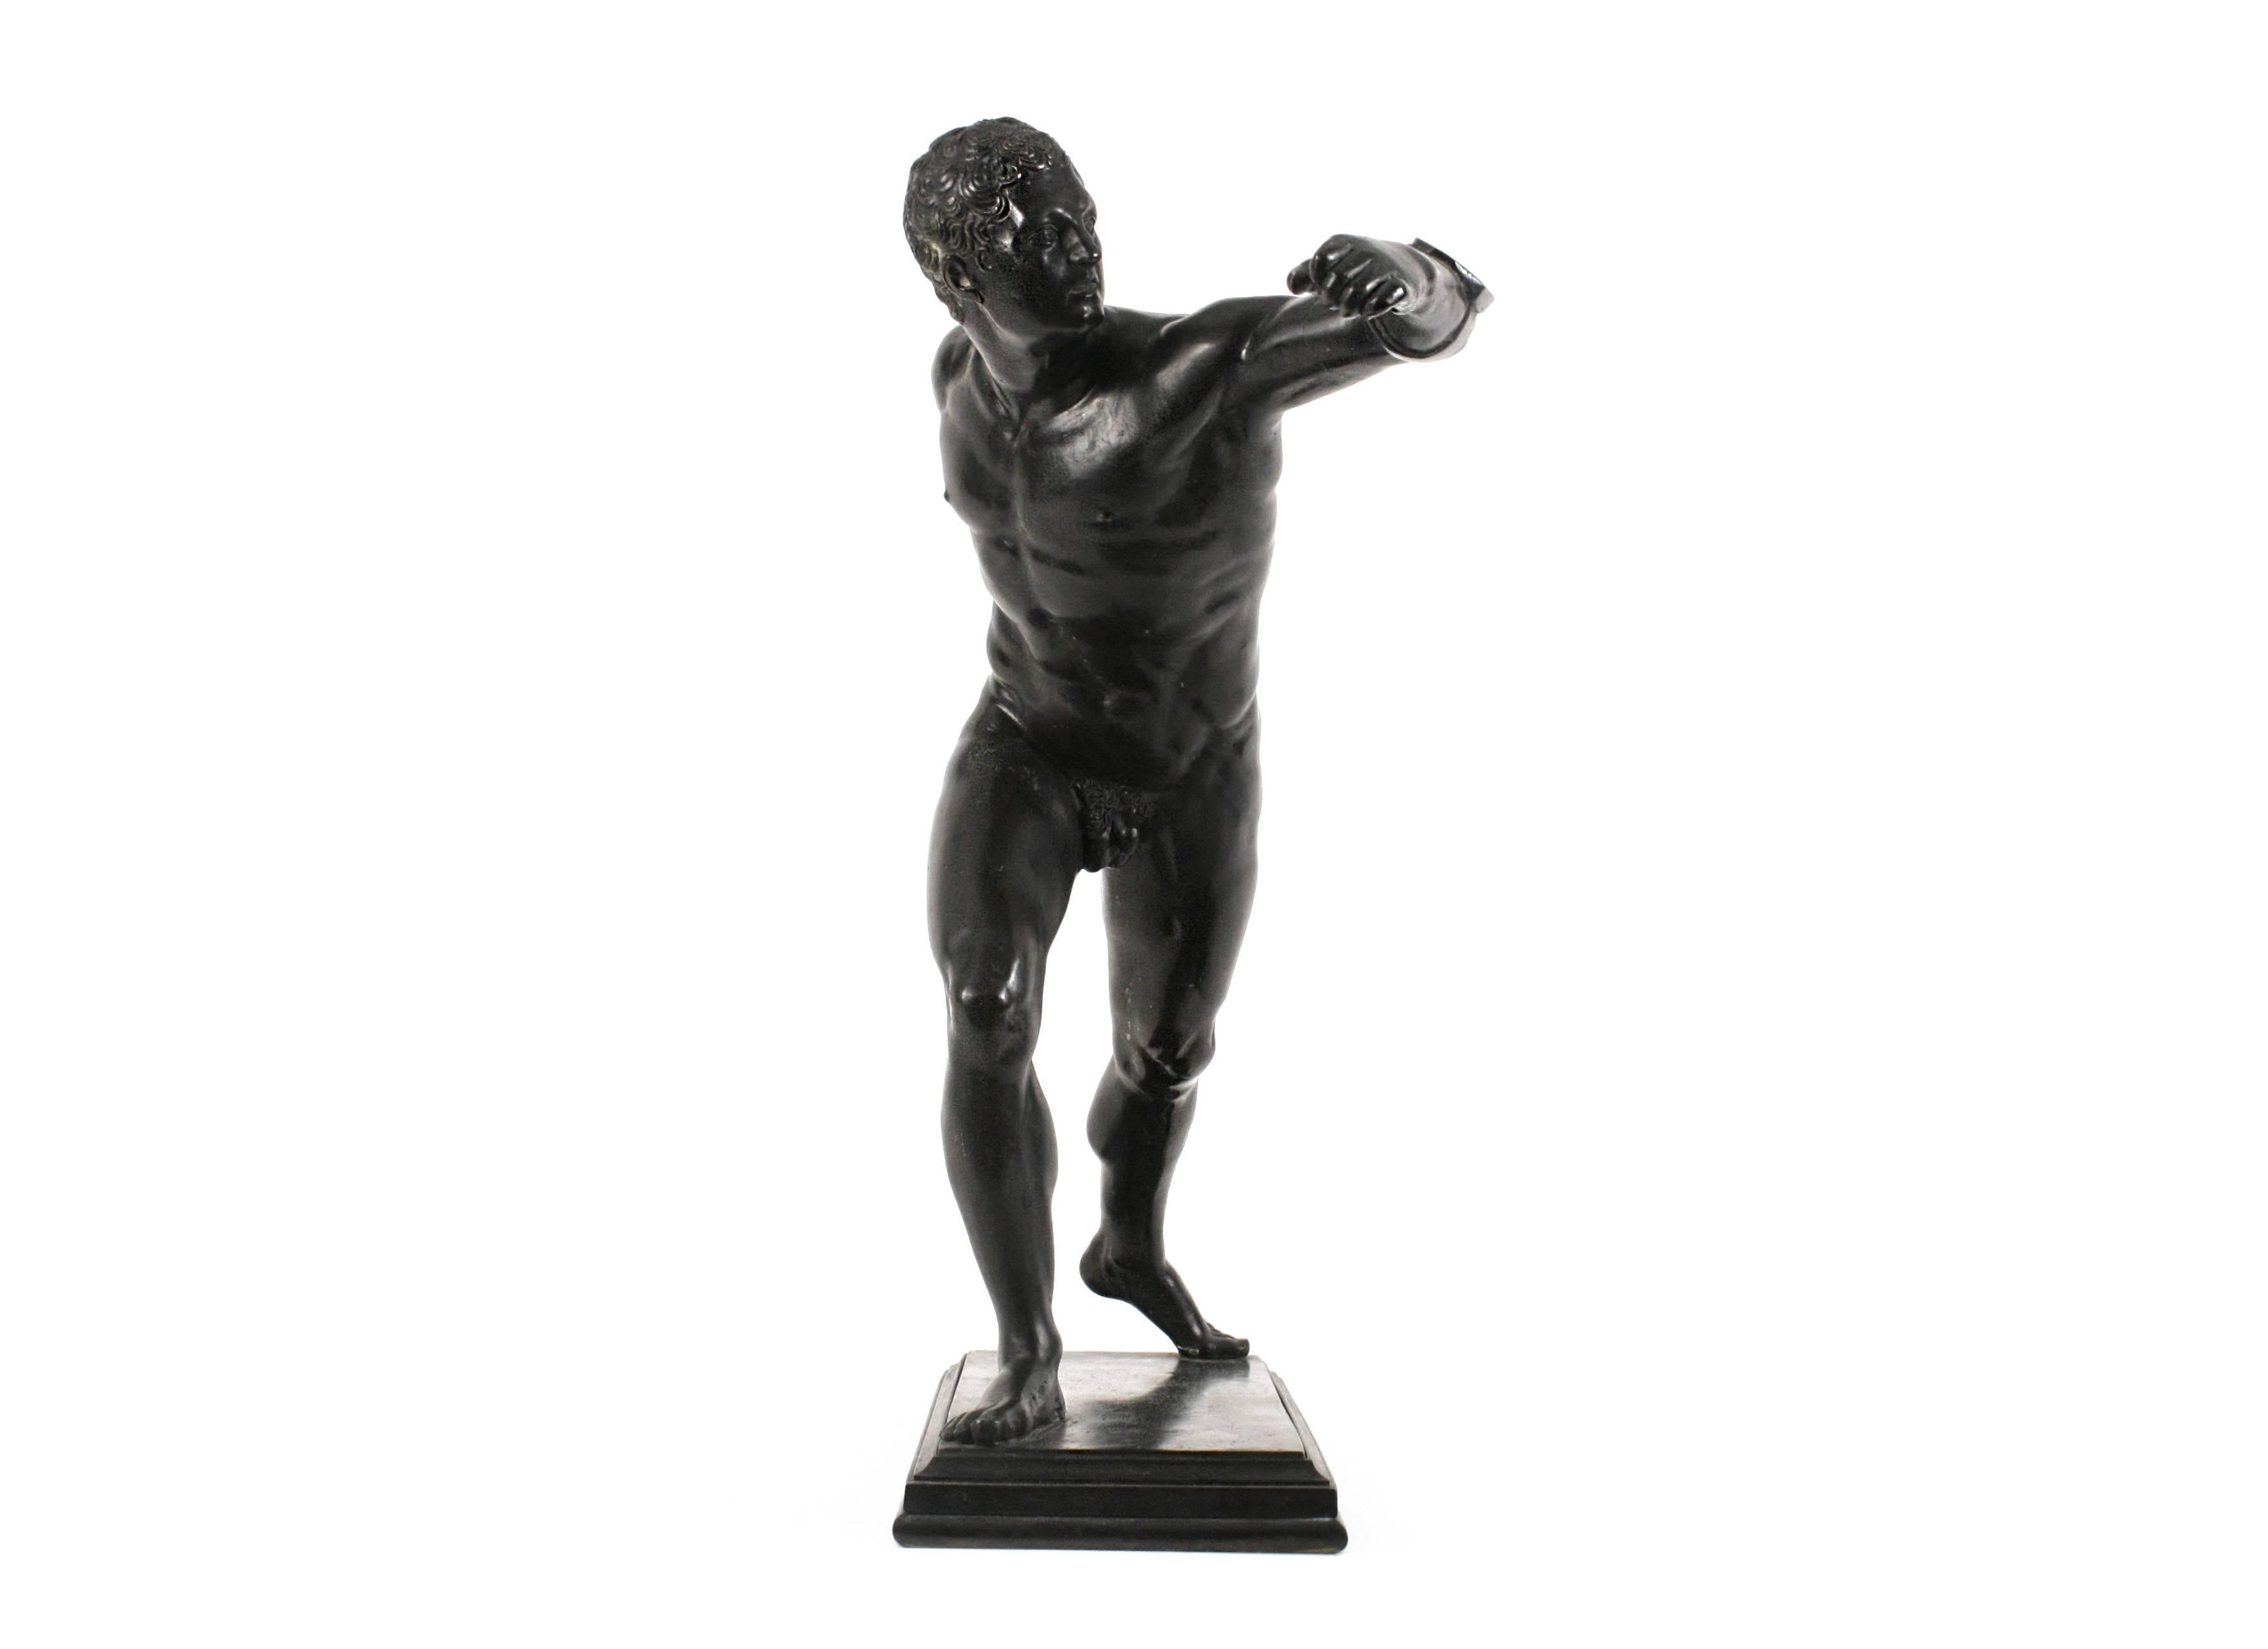 Gladiateur Borghese, d'après l'antique
grande sculpture en bronze patiné
Italie, 19e siècle
H 20 po (50,8 cm)

La sculpture originale en marbre a été découverte au début des années 1600 à Anzio, au sud de Rome, parmi les ruines d'un palais balnéaire